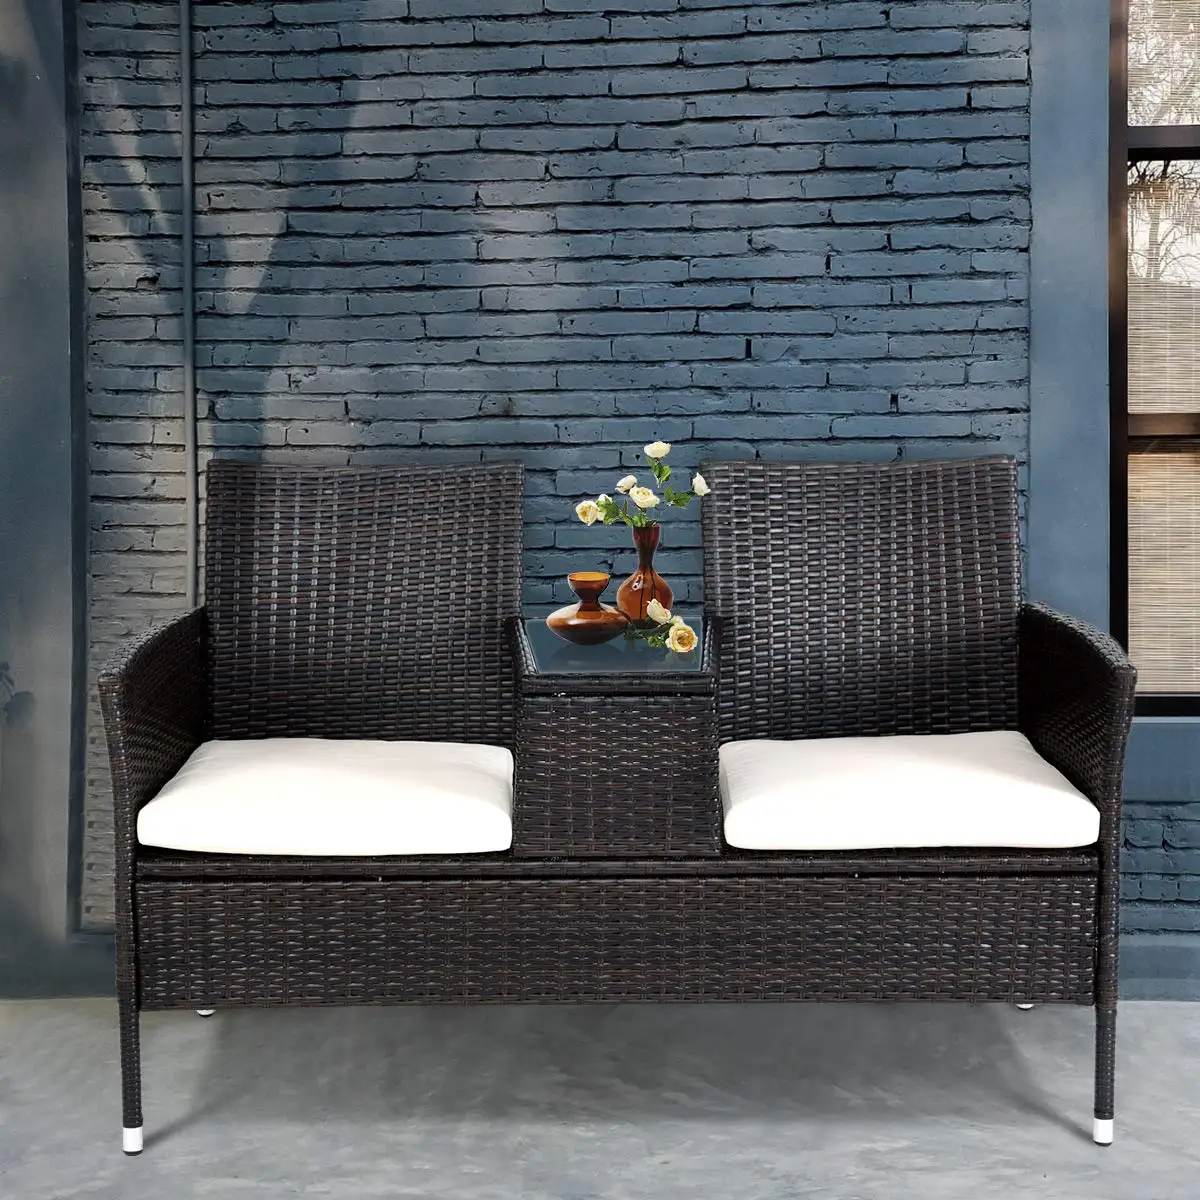 Кресло Loveseat, мебель из ротанга, наружные садовые наборы с водонепроницаемой кожаной подушкой